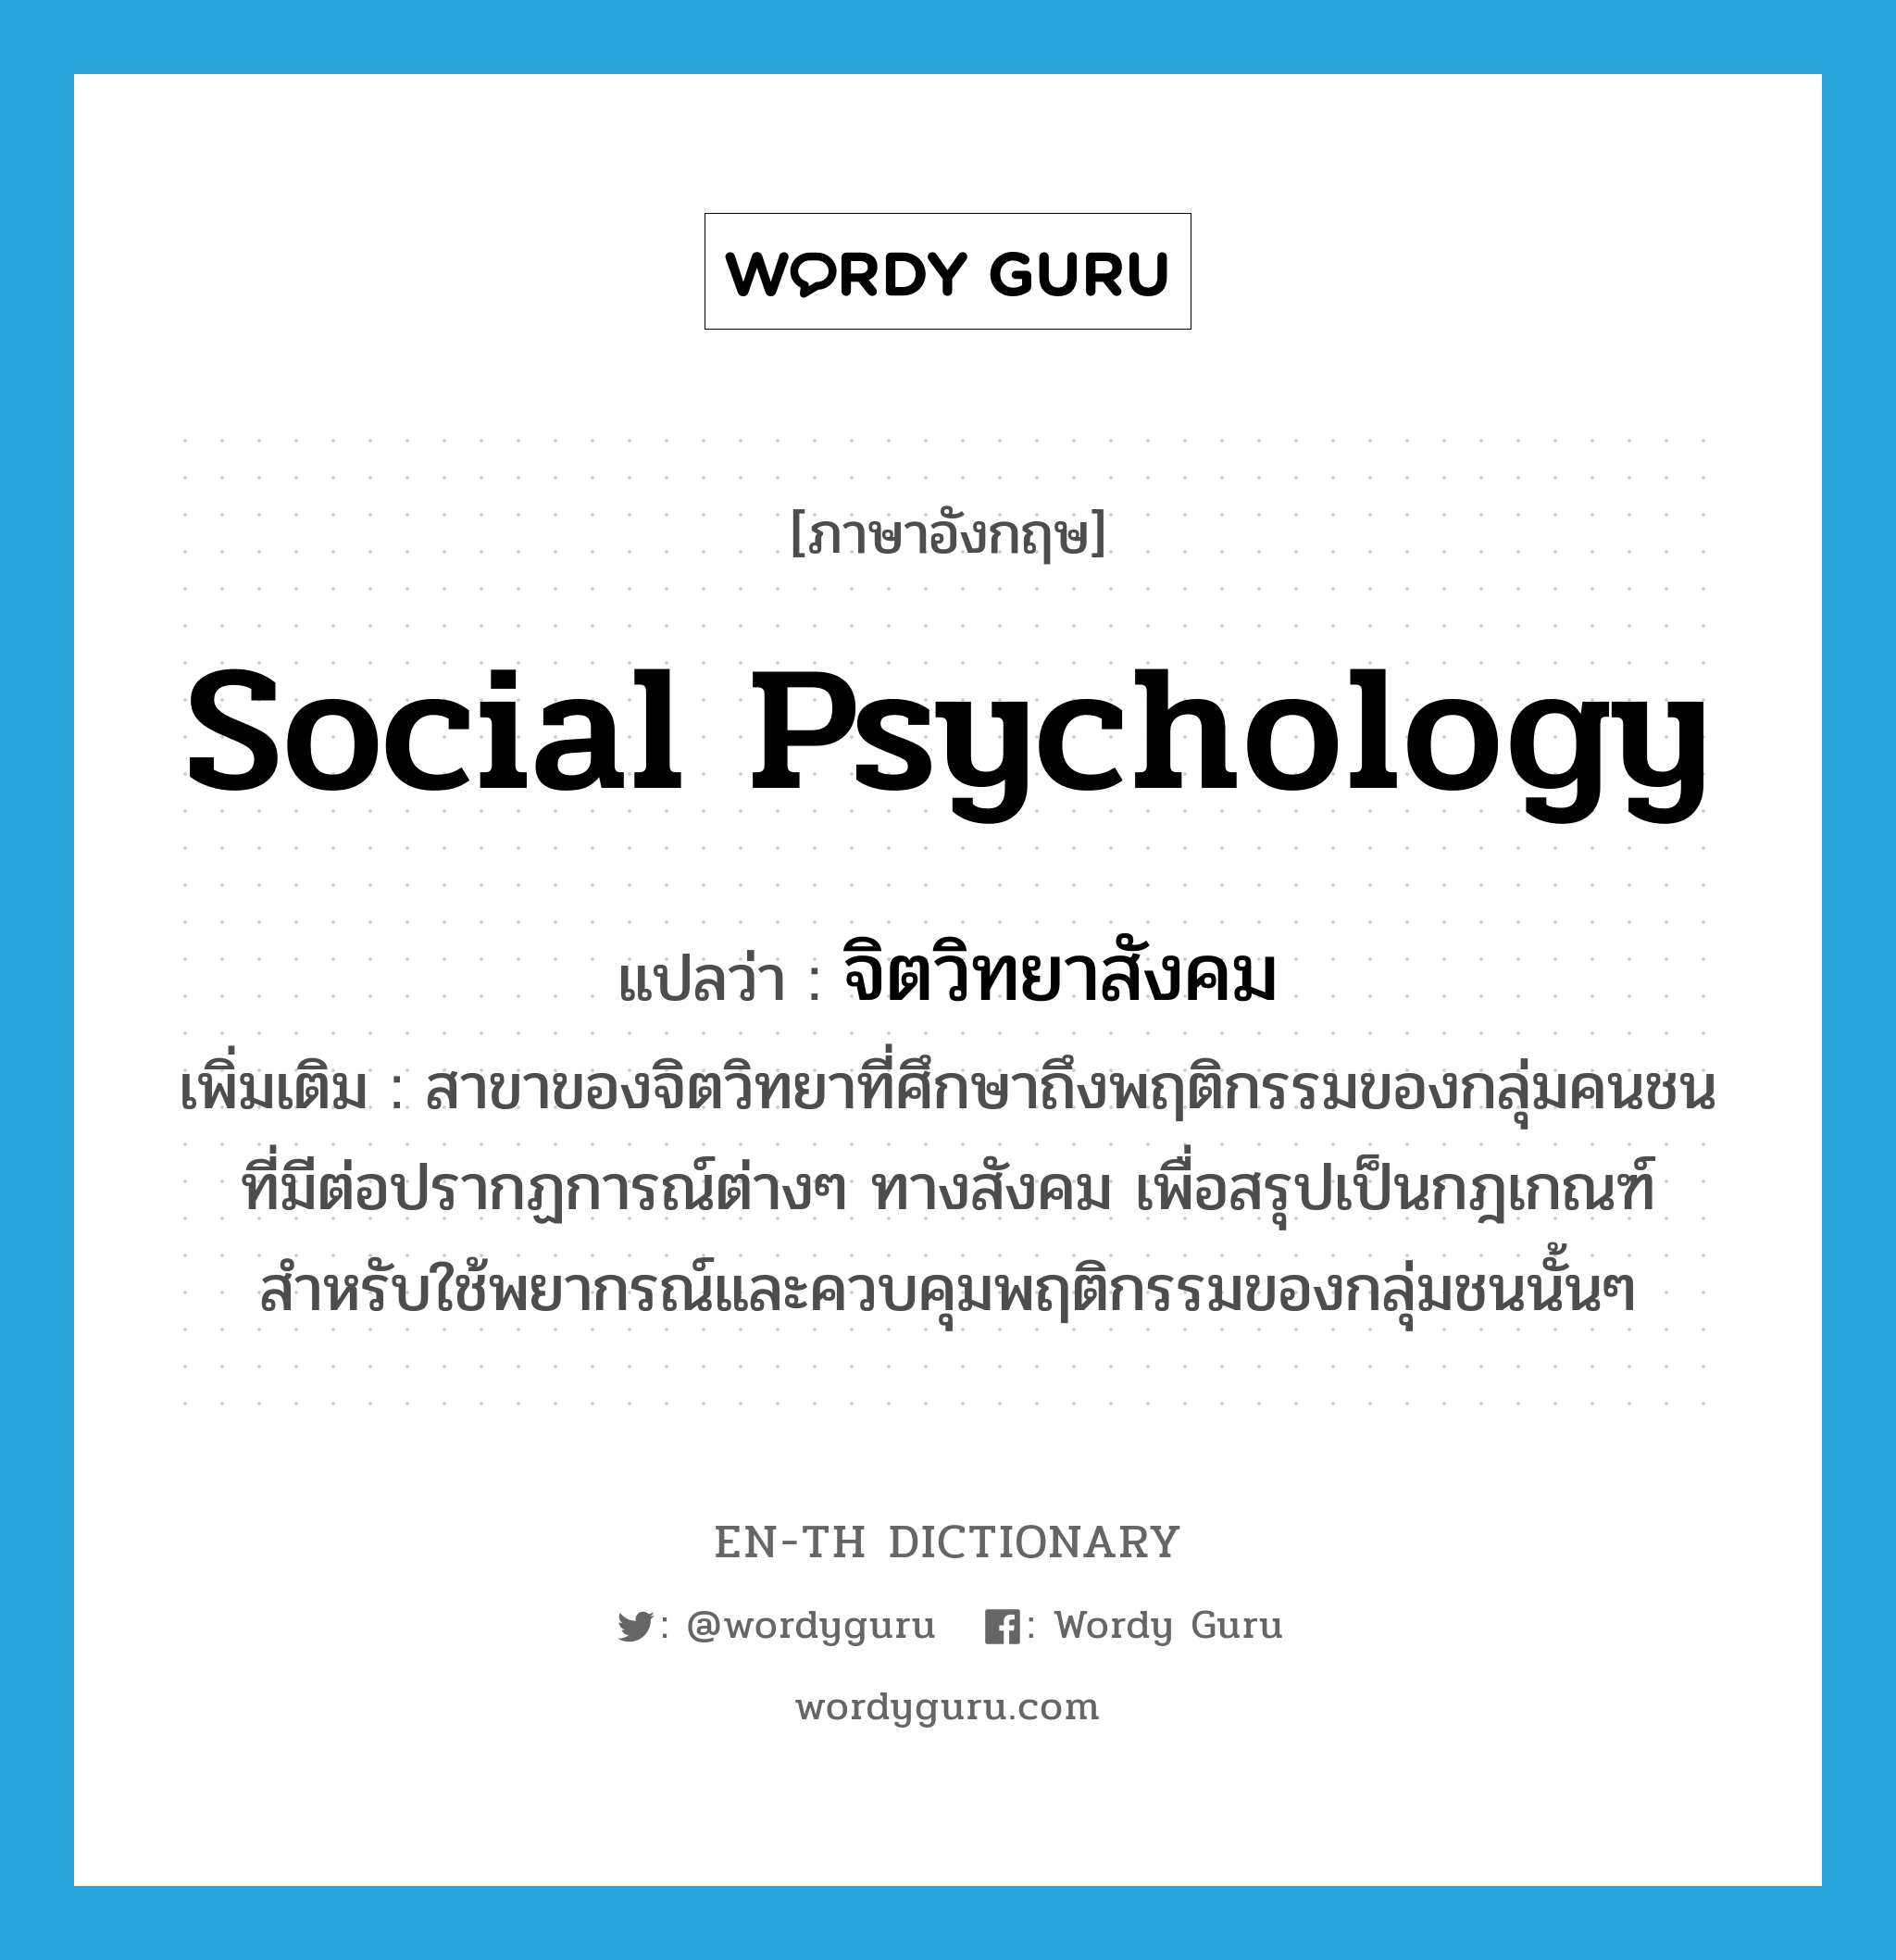 จิตวิทยาสังคม ภาษาอังกฤษ?, คำศัพท์ภาษาอังกฤษ จิตวิทยาสังคม แปลว่า social psychology ประเภท N เพิ่มเติม สาขาของจิตวิทยาที่ศึกษาถึงพฤติกรรมของกลุ่มคนชนที่มีต่อปรากฏการณ์ต่างๆ ทางสังคม เพื่อสรุปเป็นกฎเกณฑ์สำหรับใช้พยากรณ์และควบคุมพฤติกรรมของกลุ่มชนนั้นๆ หมวด N